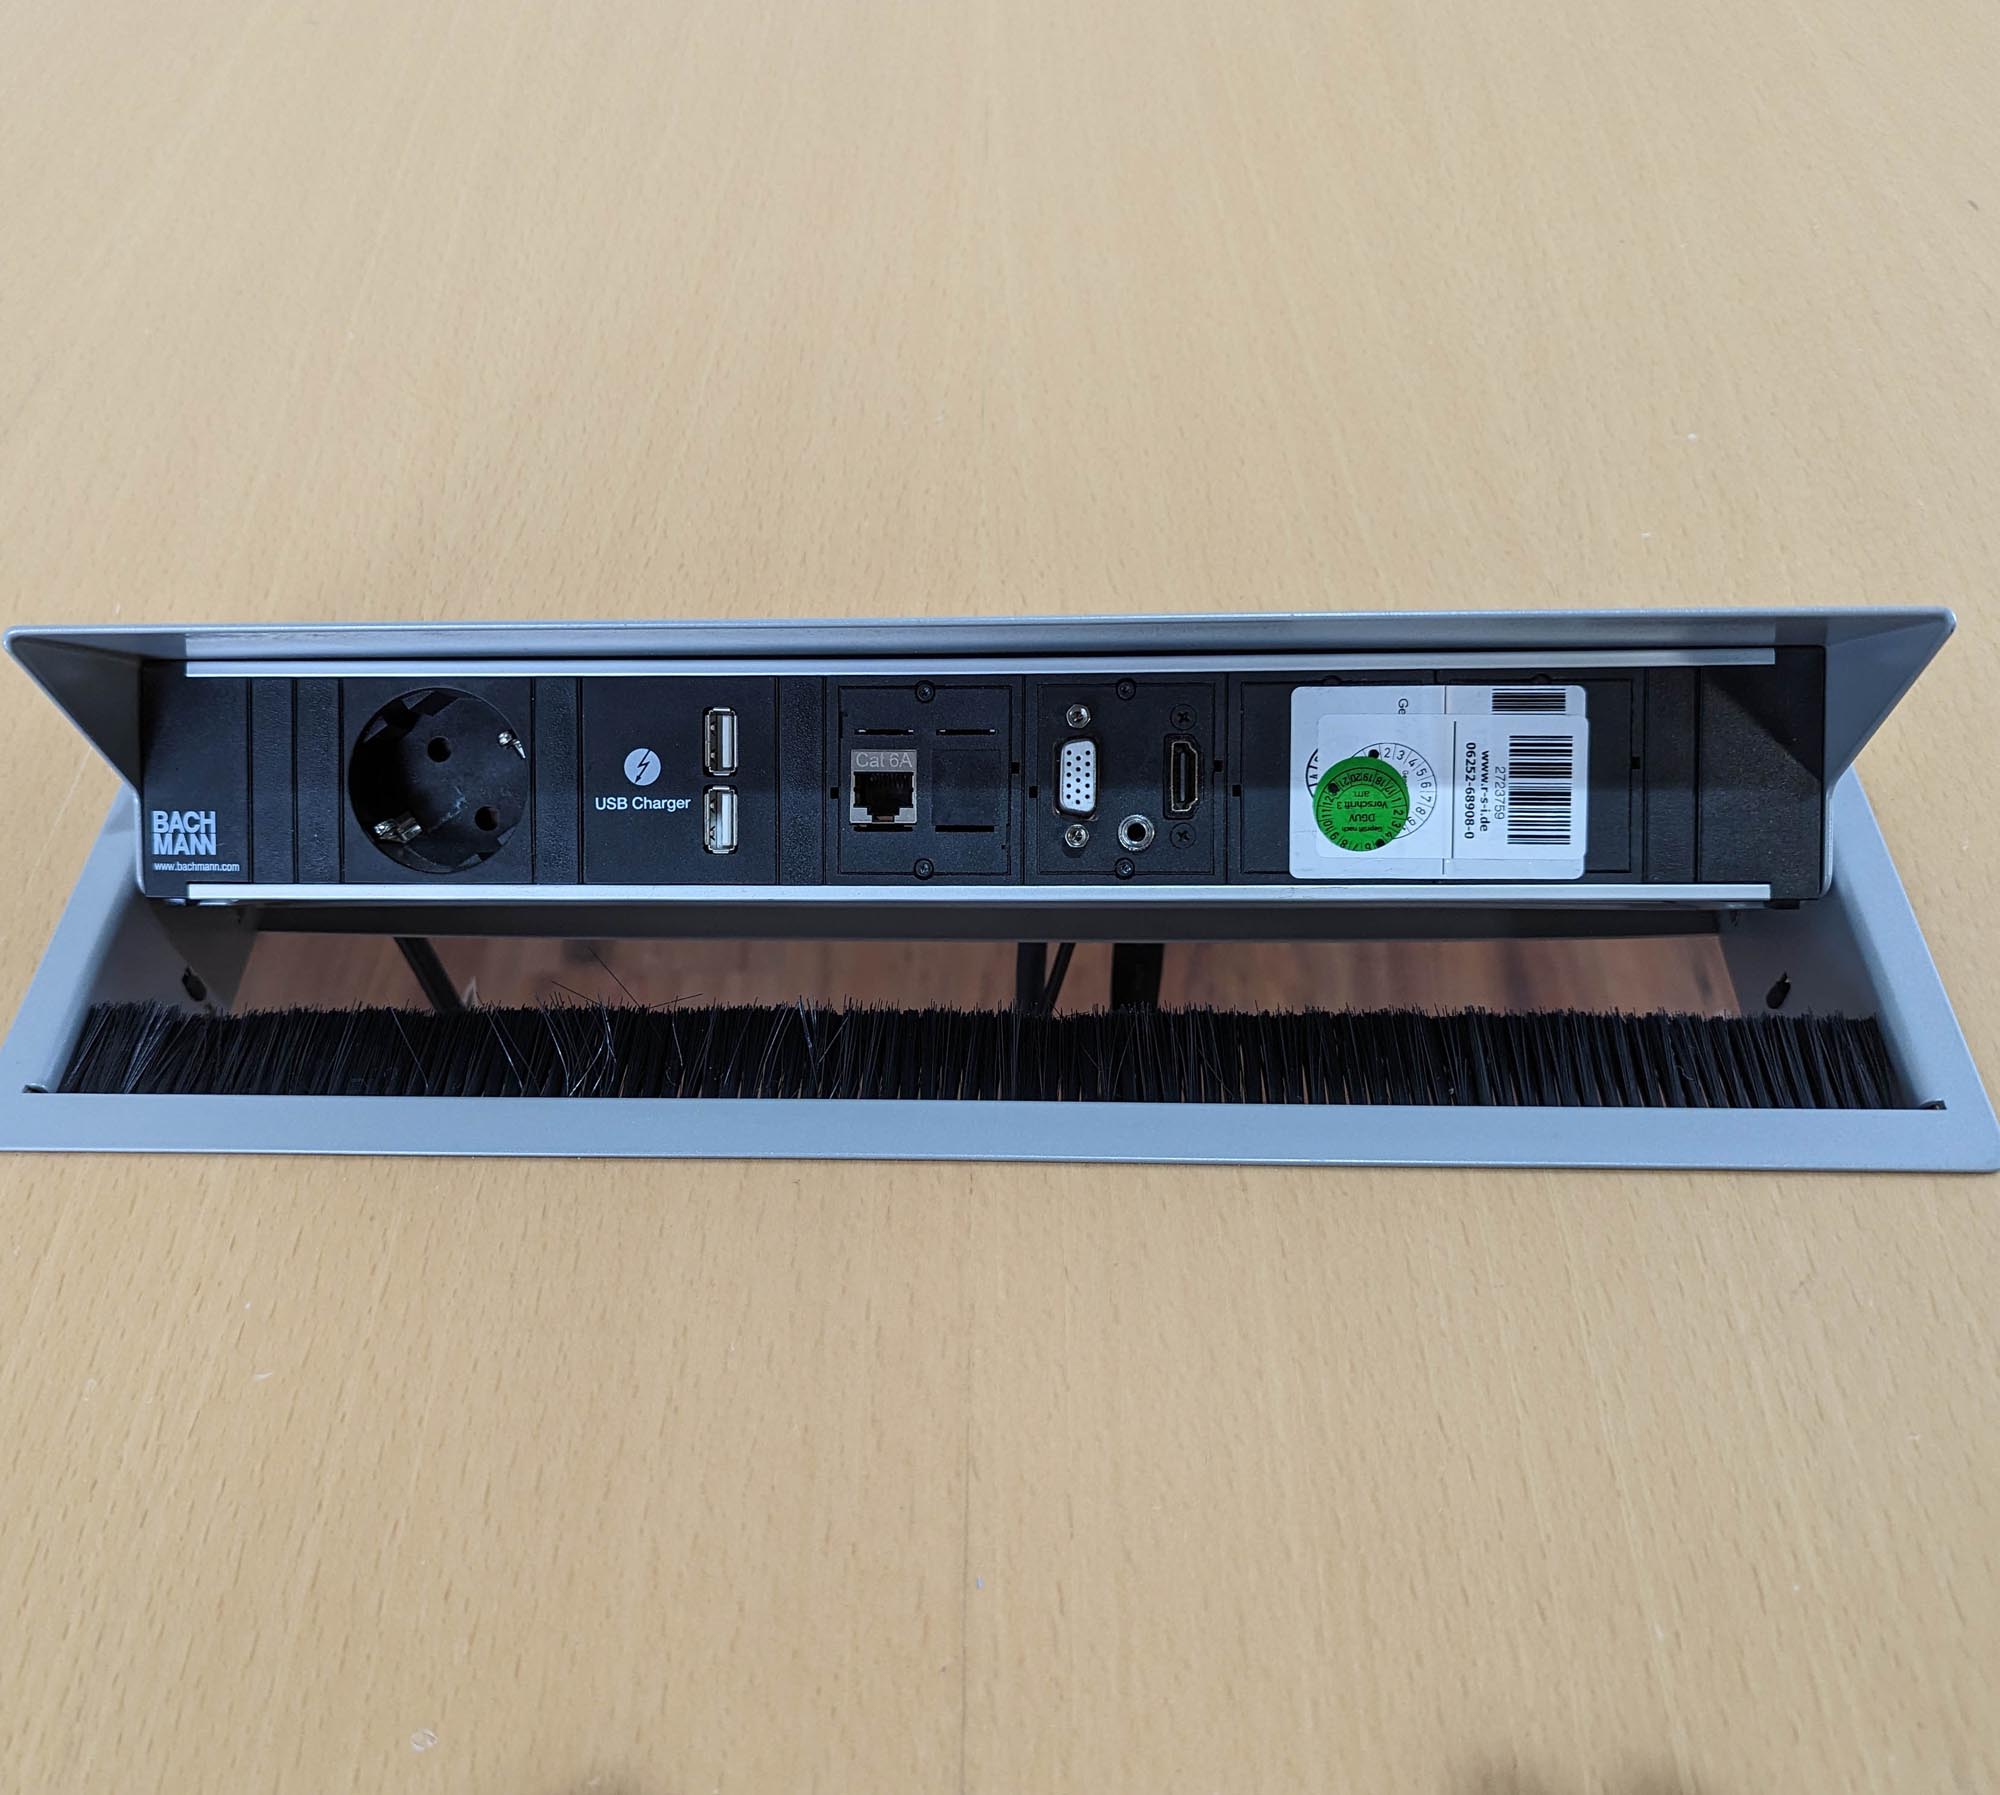 Konferenztisch Buche auf Rollen - 220 x 73 x 120 cm - 2x Netzwerkbox (230V, HDMI, USB, LAN, XLR, VGA, 3,5mm) 